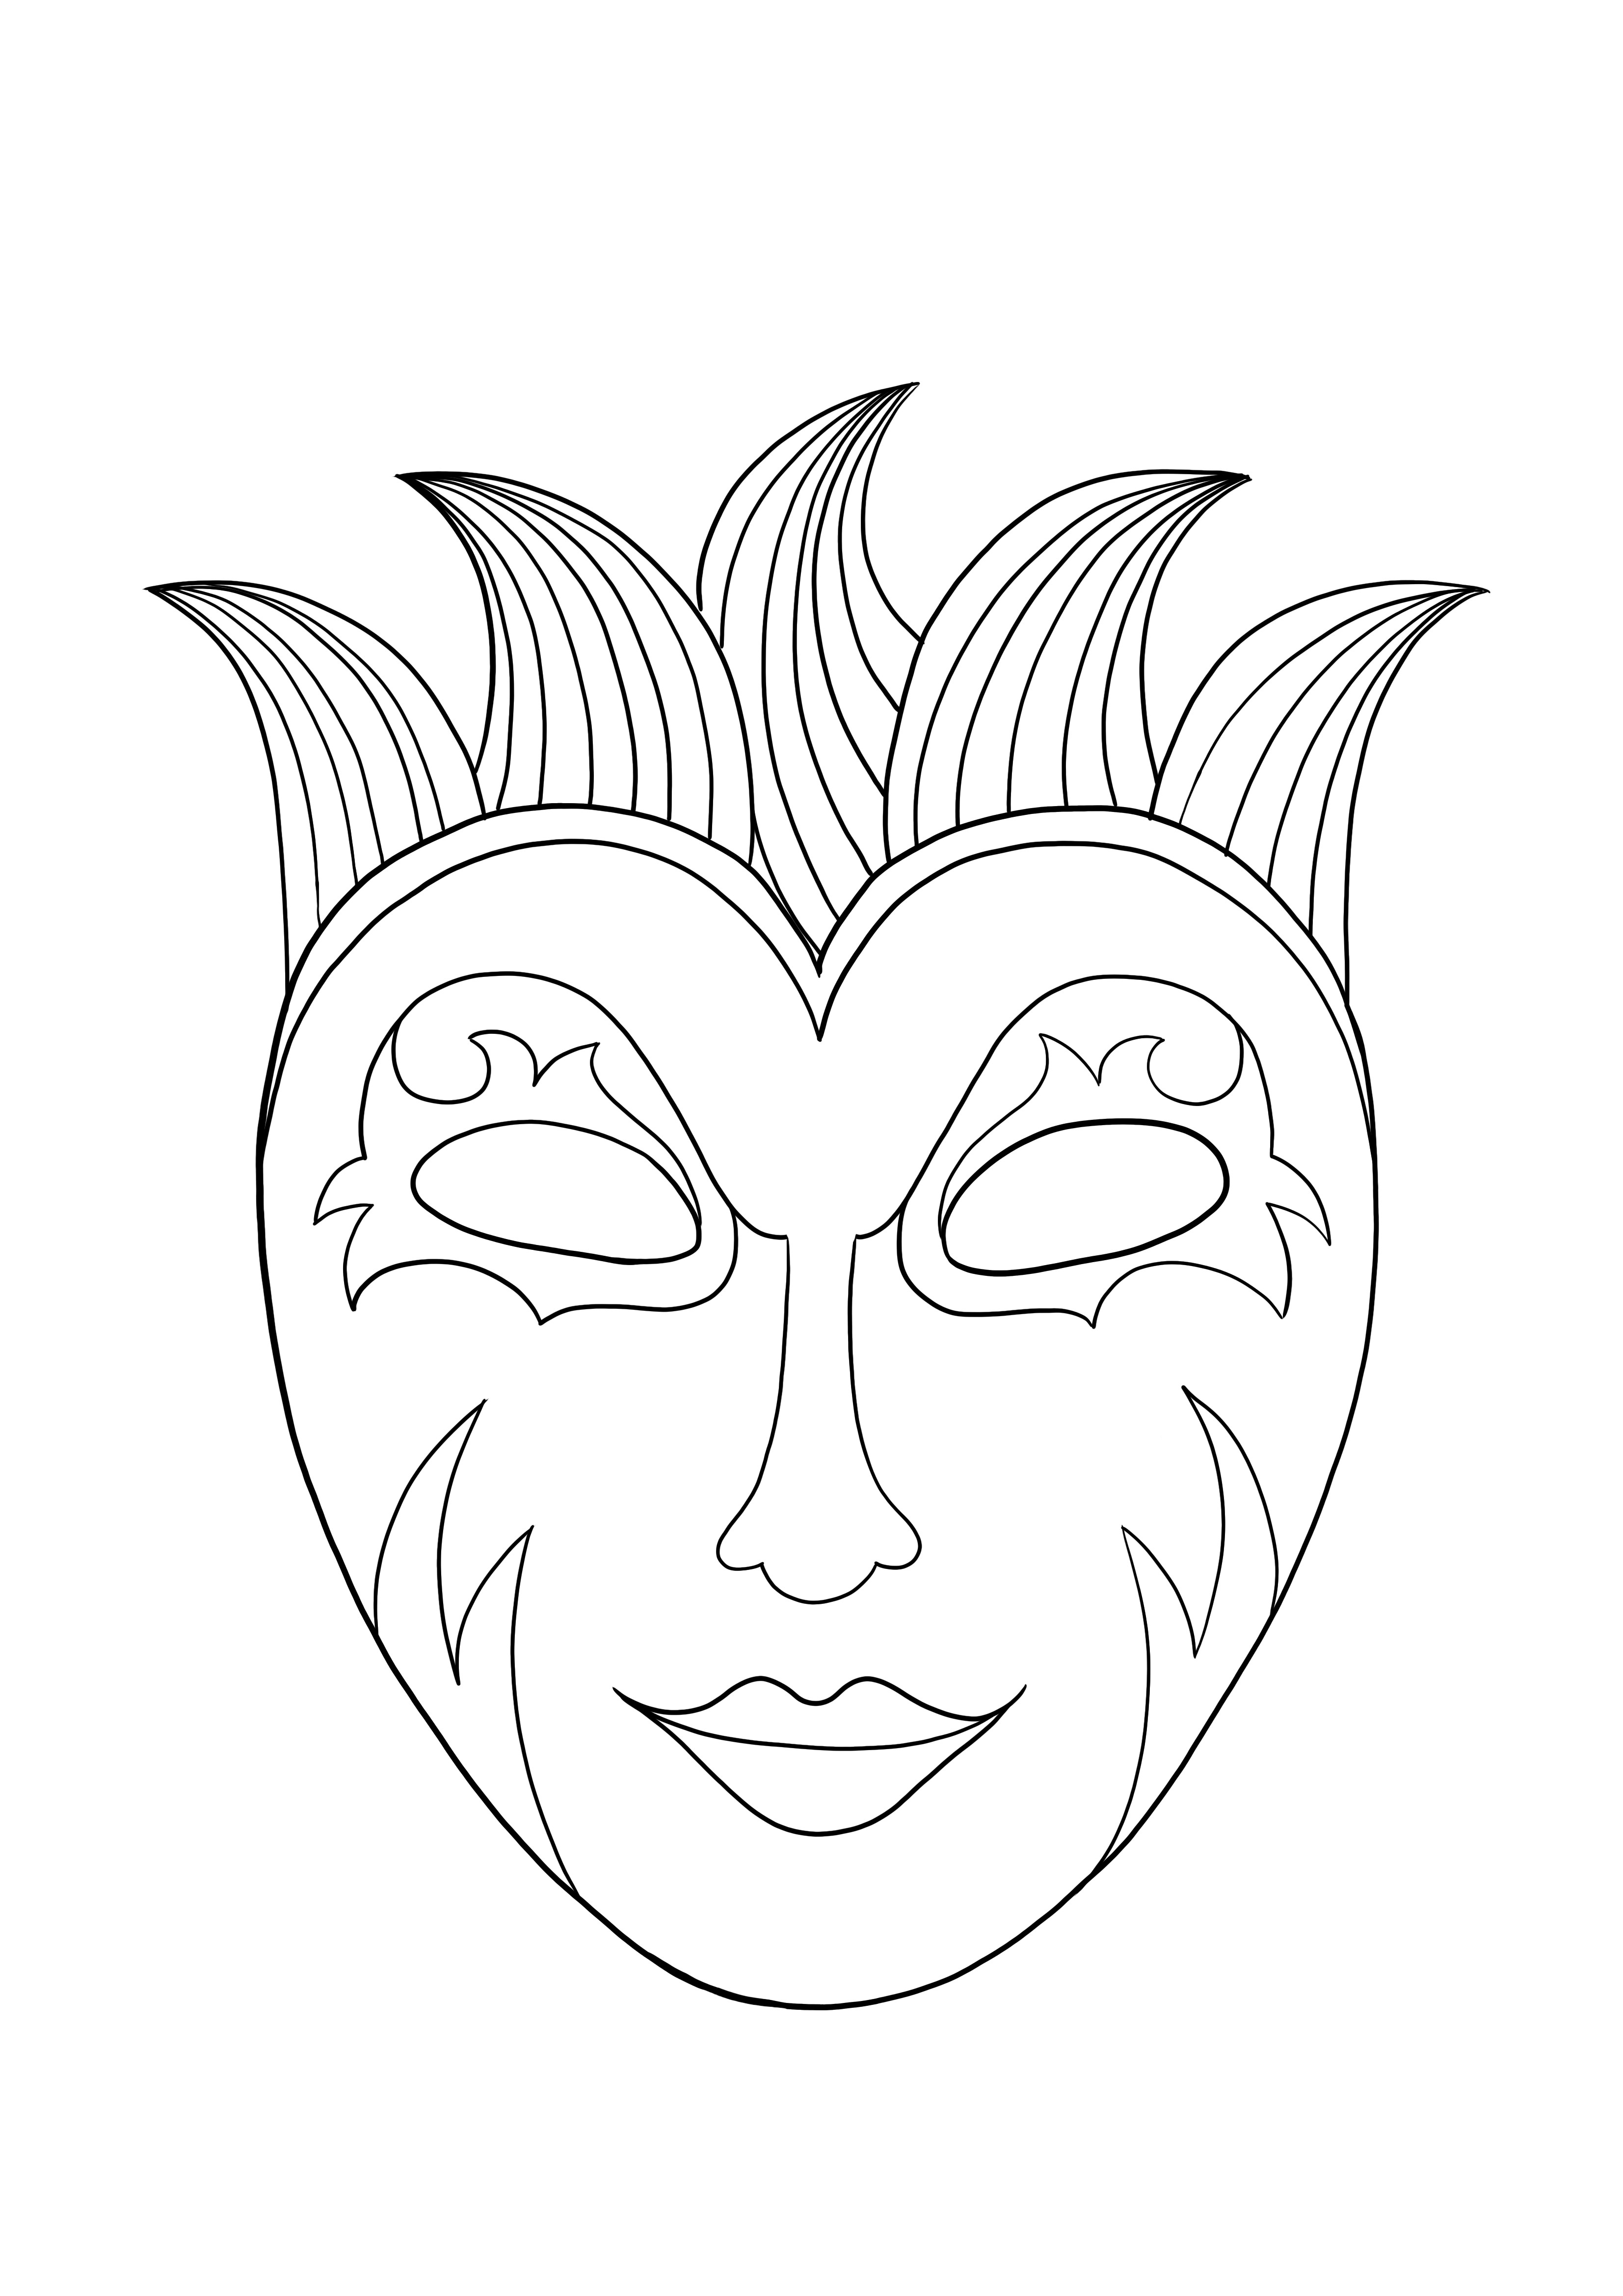 Mardi Gras maskesi ücretsiz indirme ve boyama sayfası